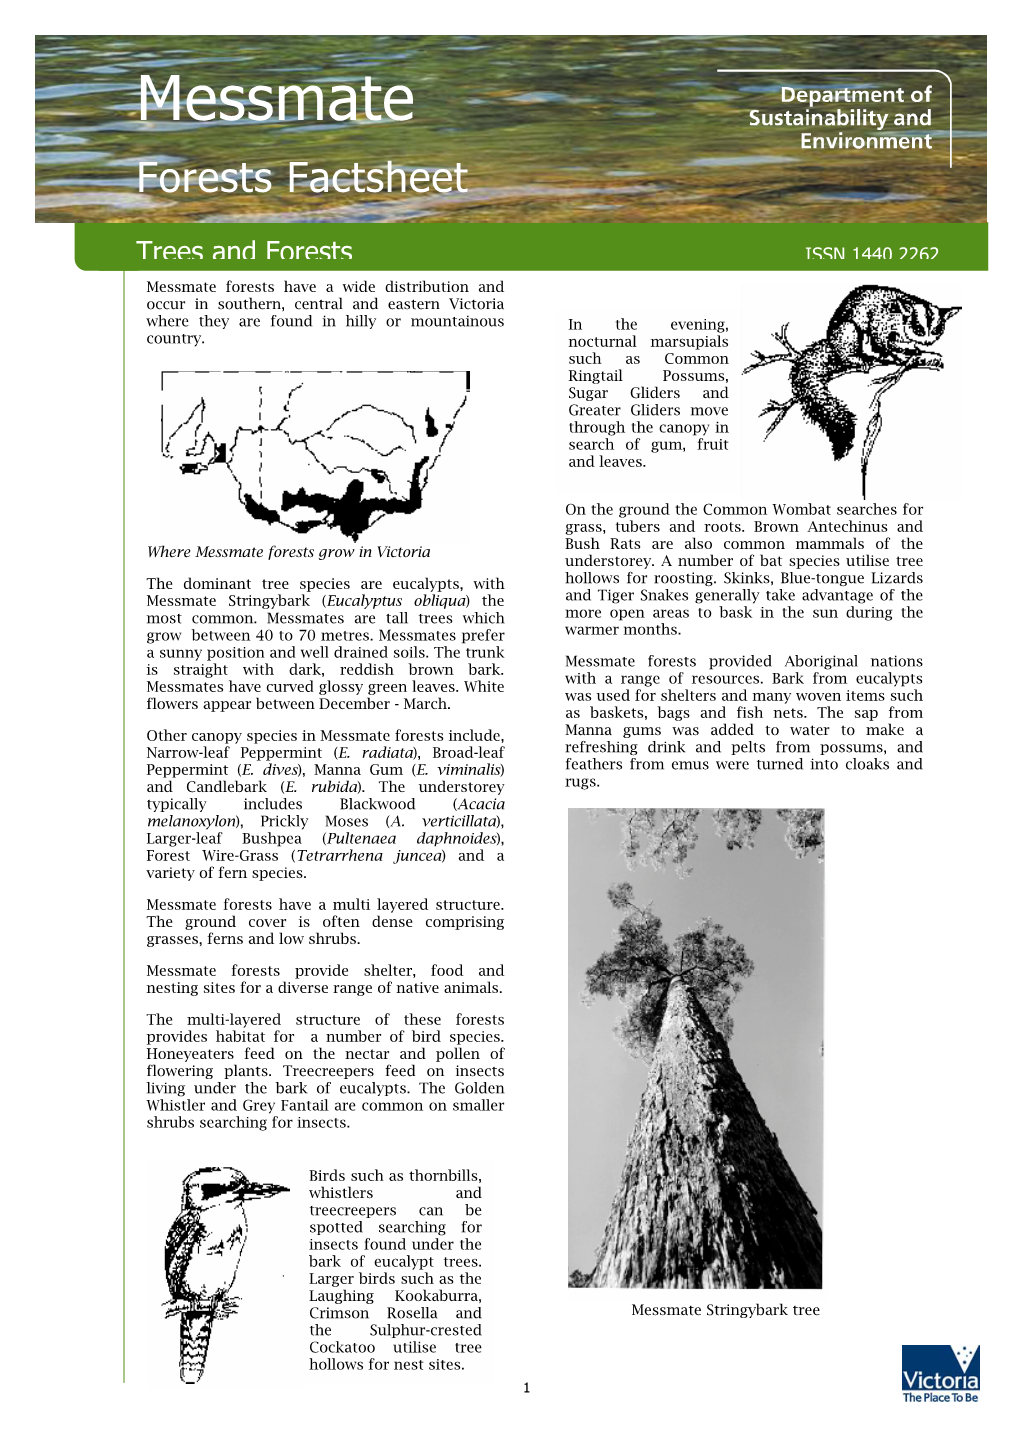 Messmate Forests Factsheet